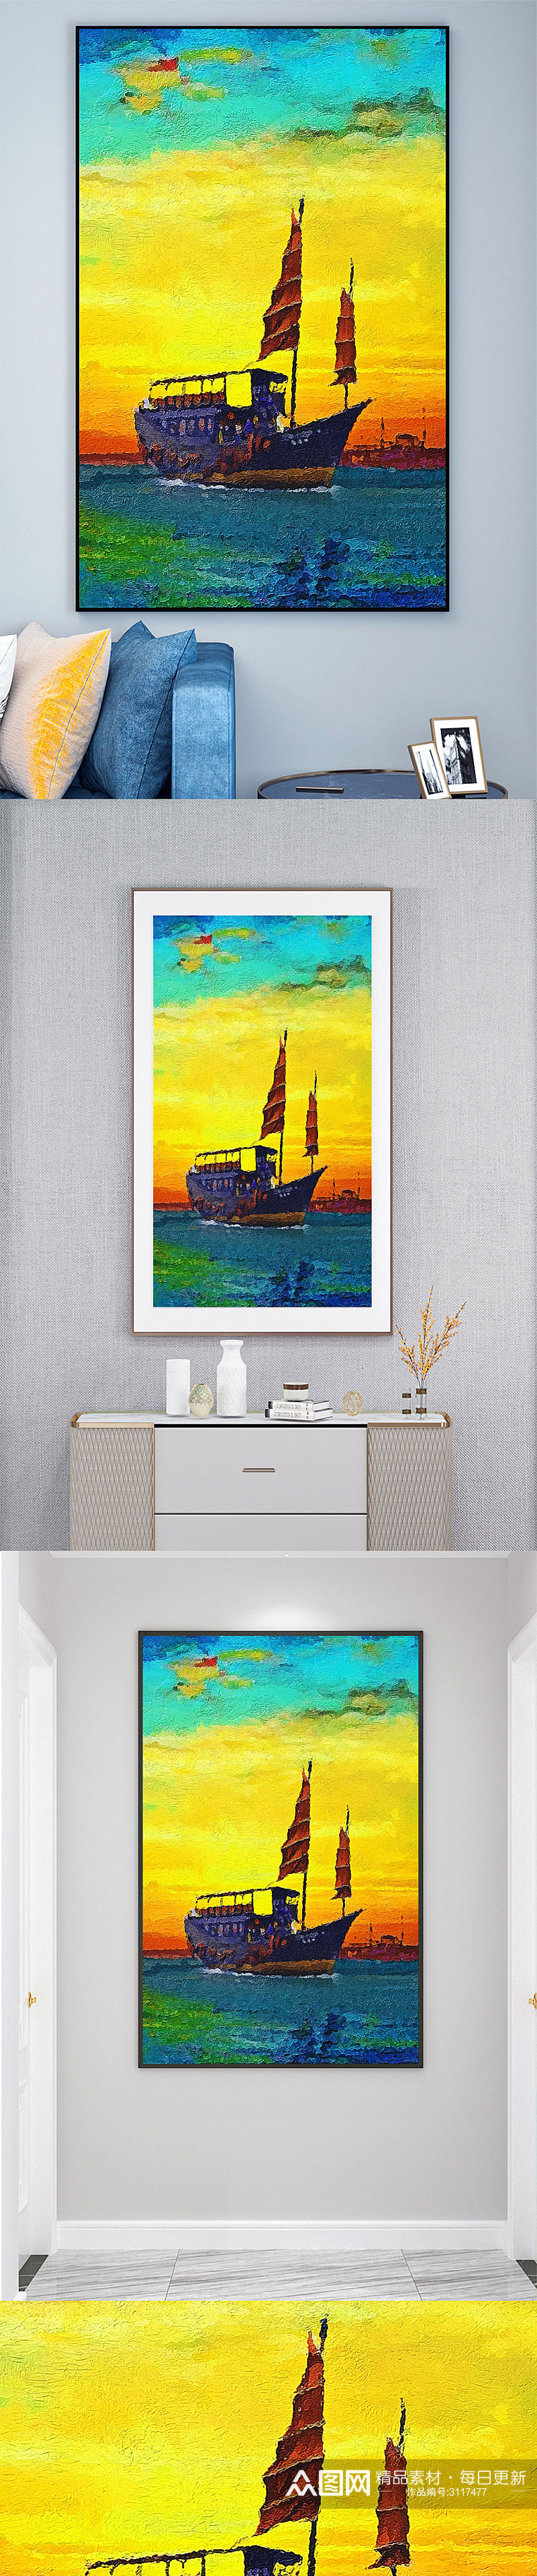 帆船油画壁画装饰画素材